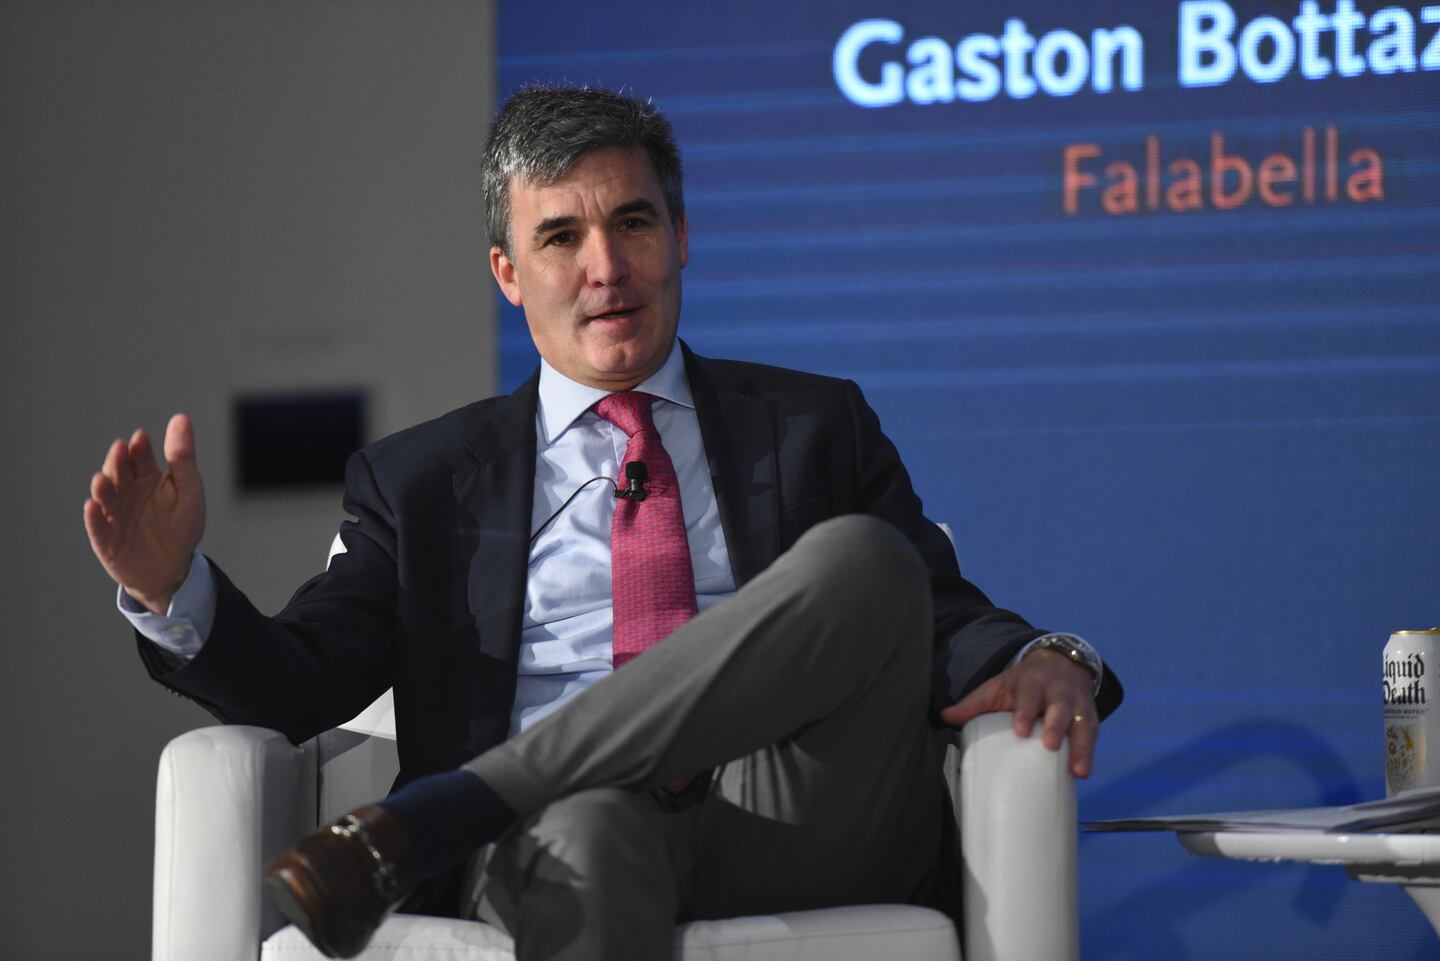 Gaston Bottazzini, CEO de Falabella, en el simposio.dfd